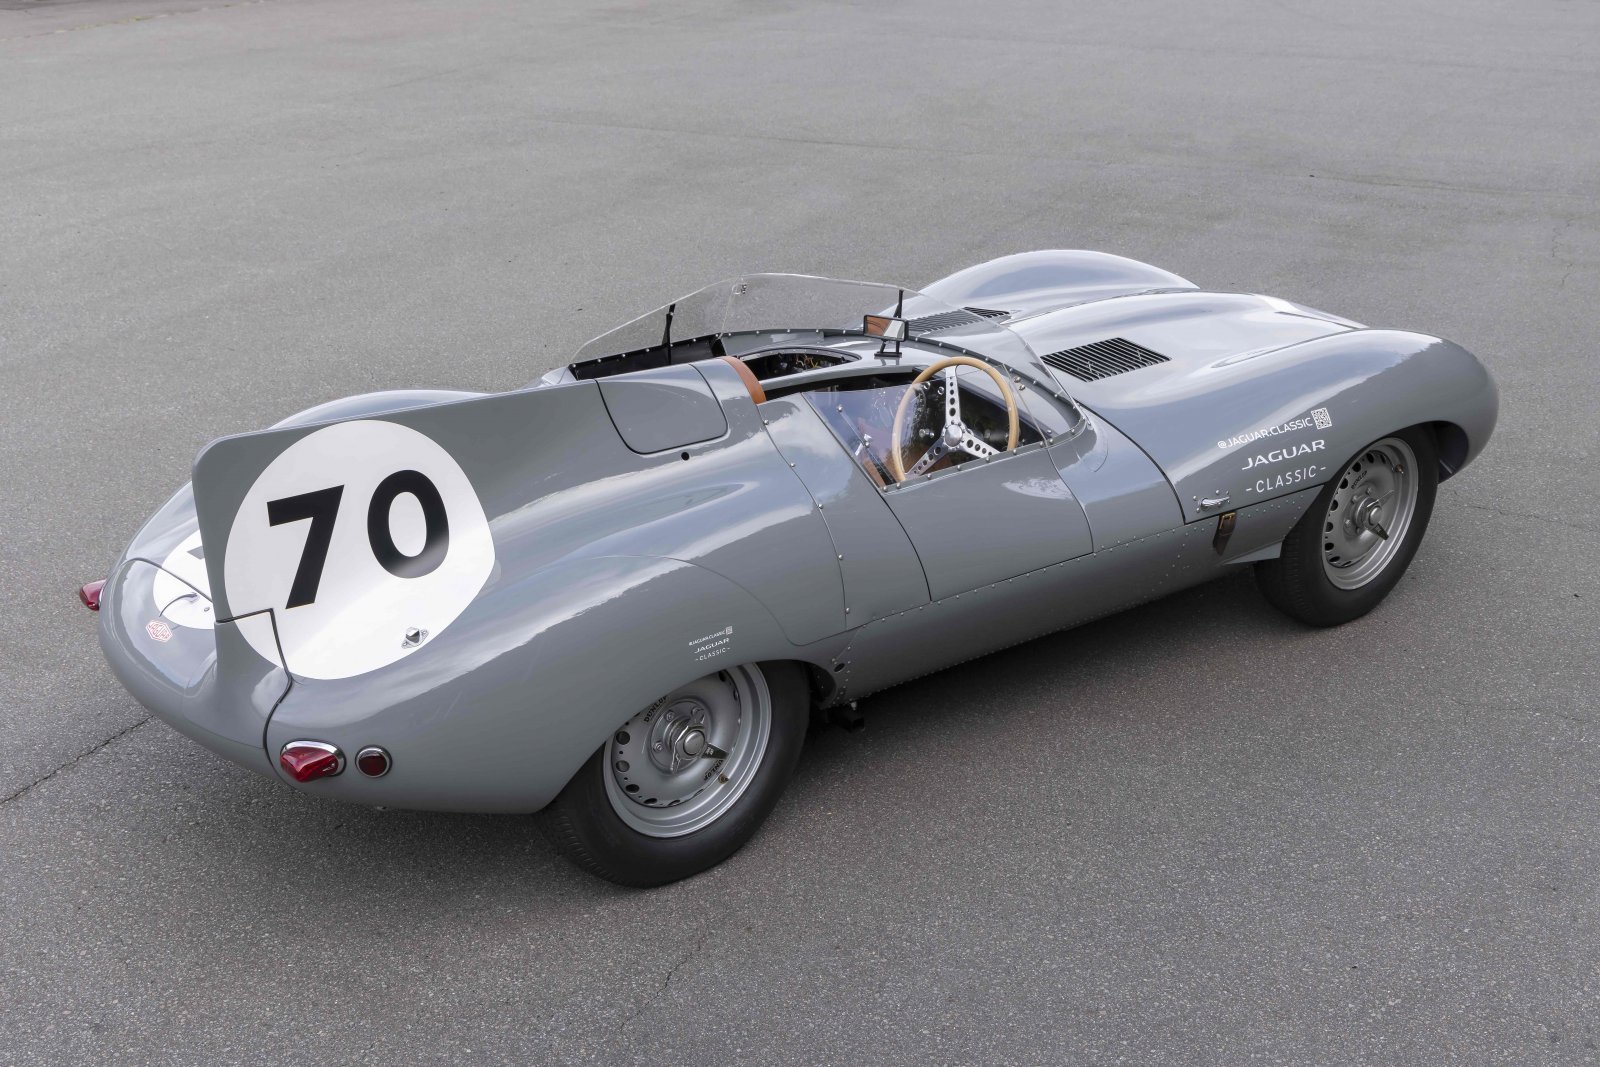 1950年代のル・マンカーが、現代に蘇る、究極のレースカー、ジャガーC 